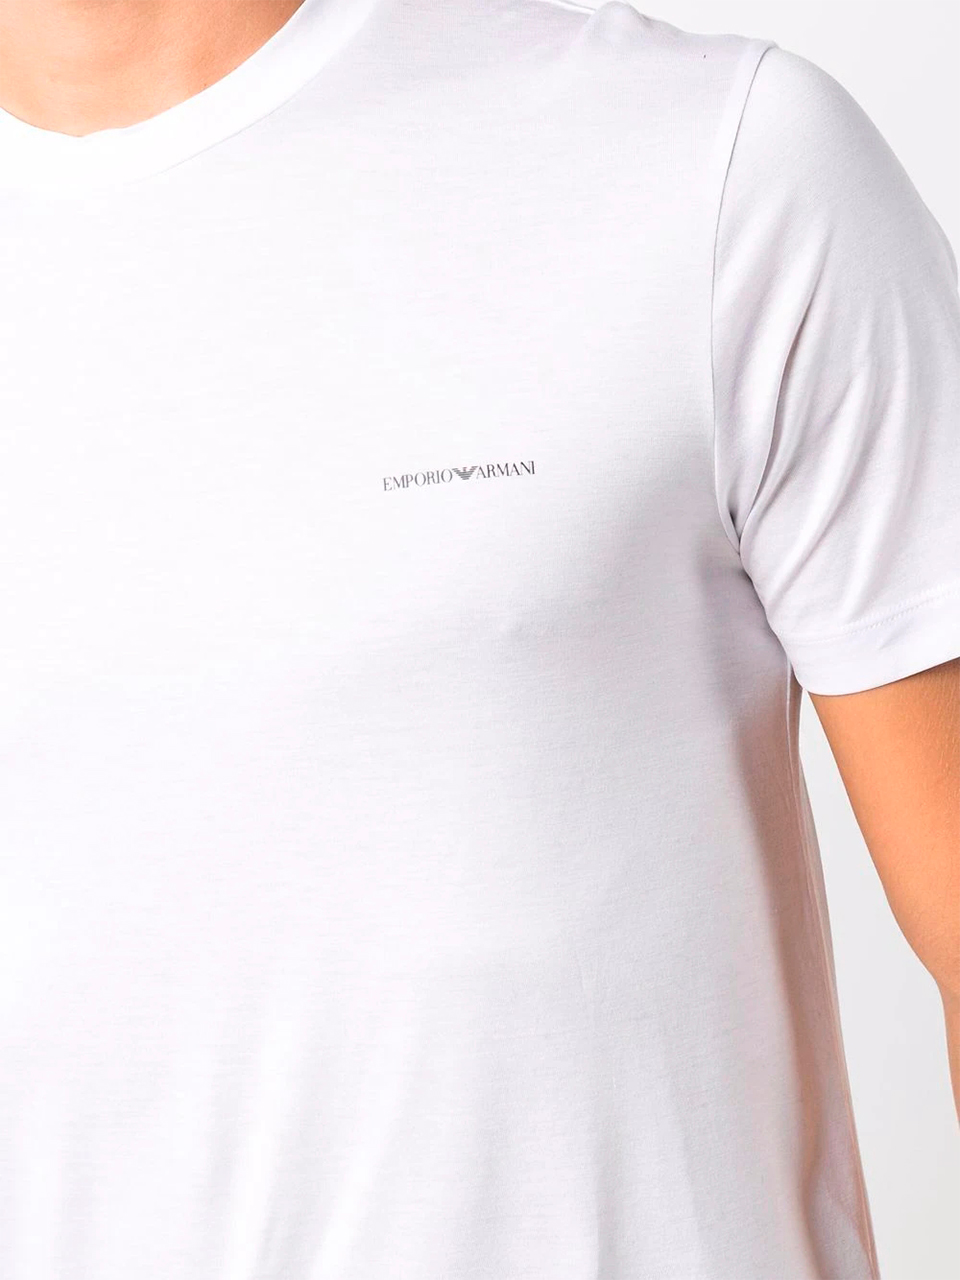 Imagem de: Camiseta Emporio Armani Branca Básica